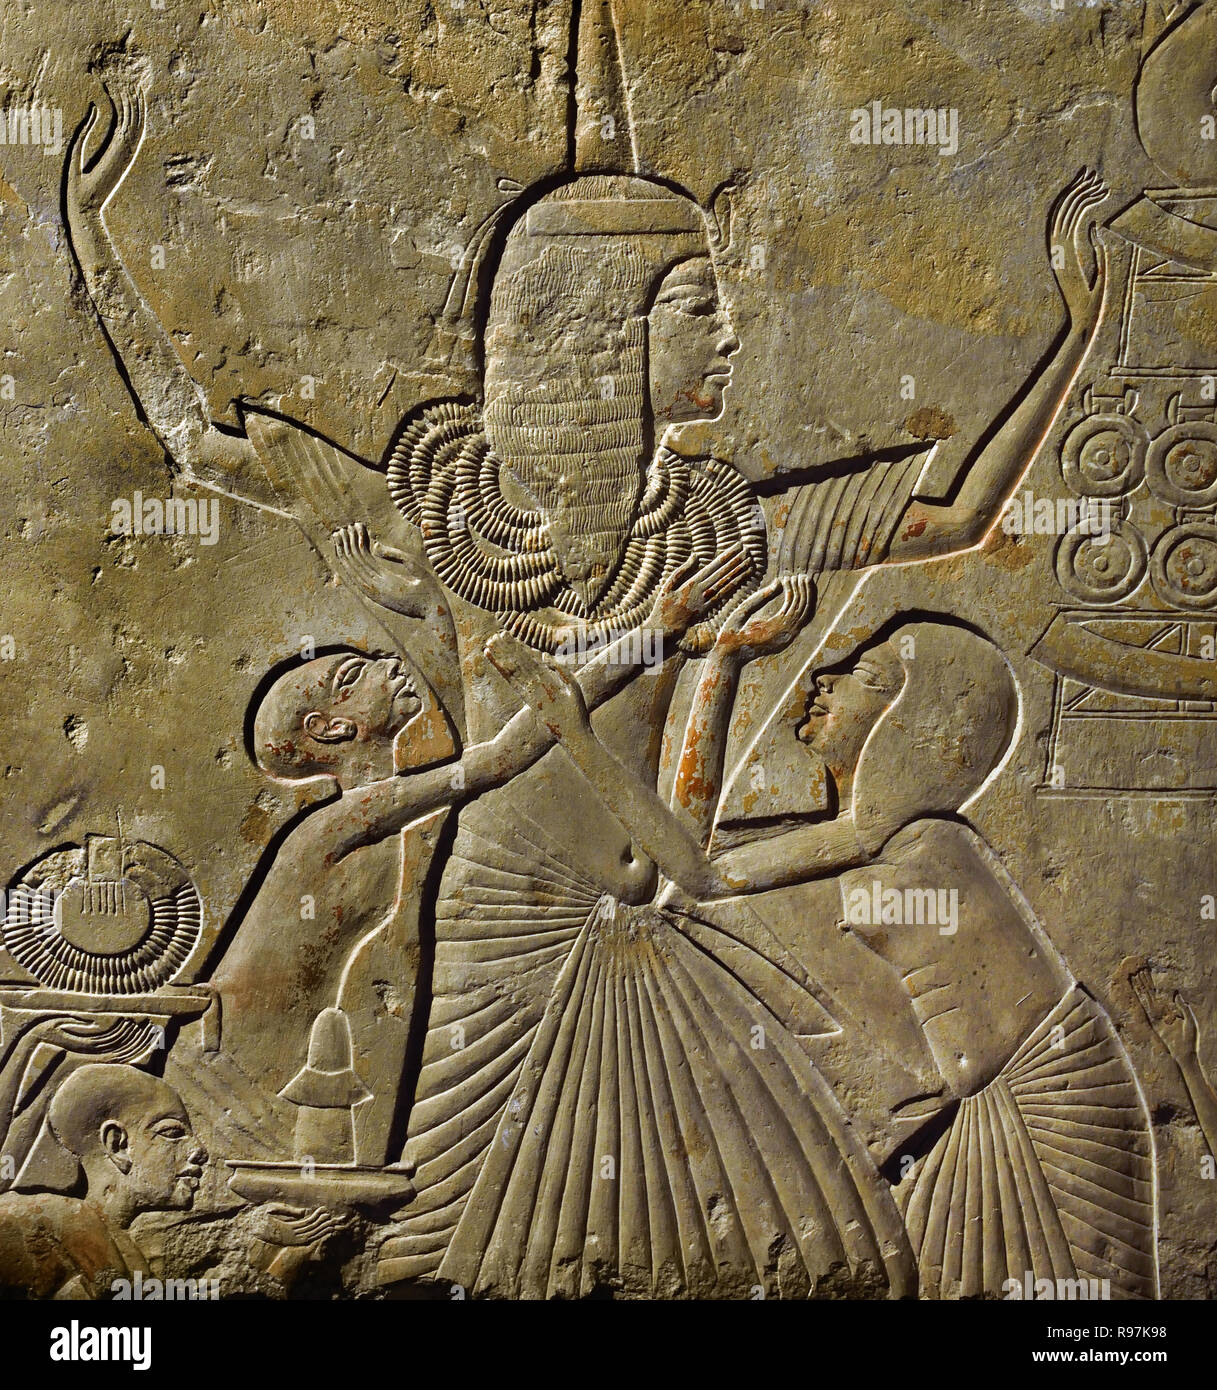 Haremhab war der oberste Befehlshaber der Armeen des Tutanchamun. Vier Jahre nach dessen Tod, er stieg auf den Thron als Pharao. Ein prächtiges Grab in Sakkara stammt aus seiner Zeit als allgemein. Hier Haremhab wird mit Gold gorgets in Dankbarkeit für seine Siege auf dem Schlachtfeld präsentiert. Auf der linken Seite, Ägyptischen Soldaten bringen in einigen asiatischen Gefangenen. 86 x 109 x 19,5 cm Kalkstein, 1333-1319 v. Chr., einen Platz zu finden: Sakkara, Ägypten, Ägyptische. Stockfoto